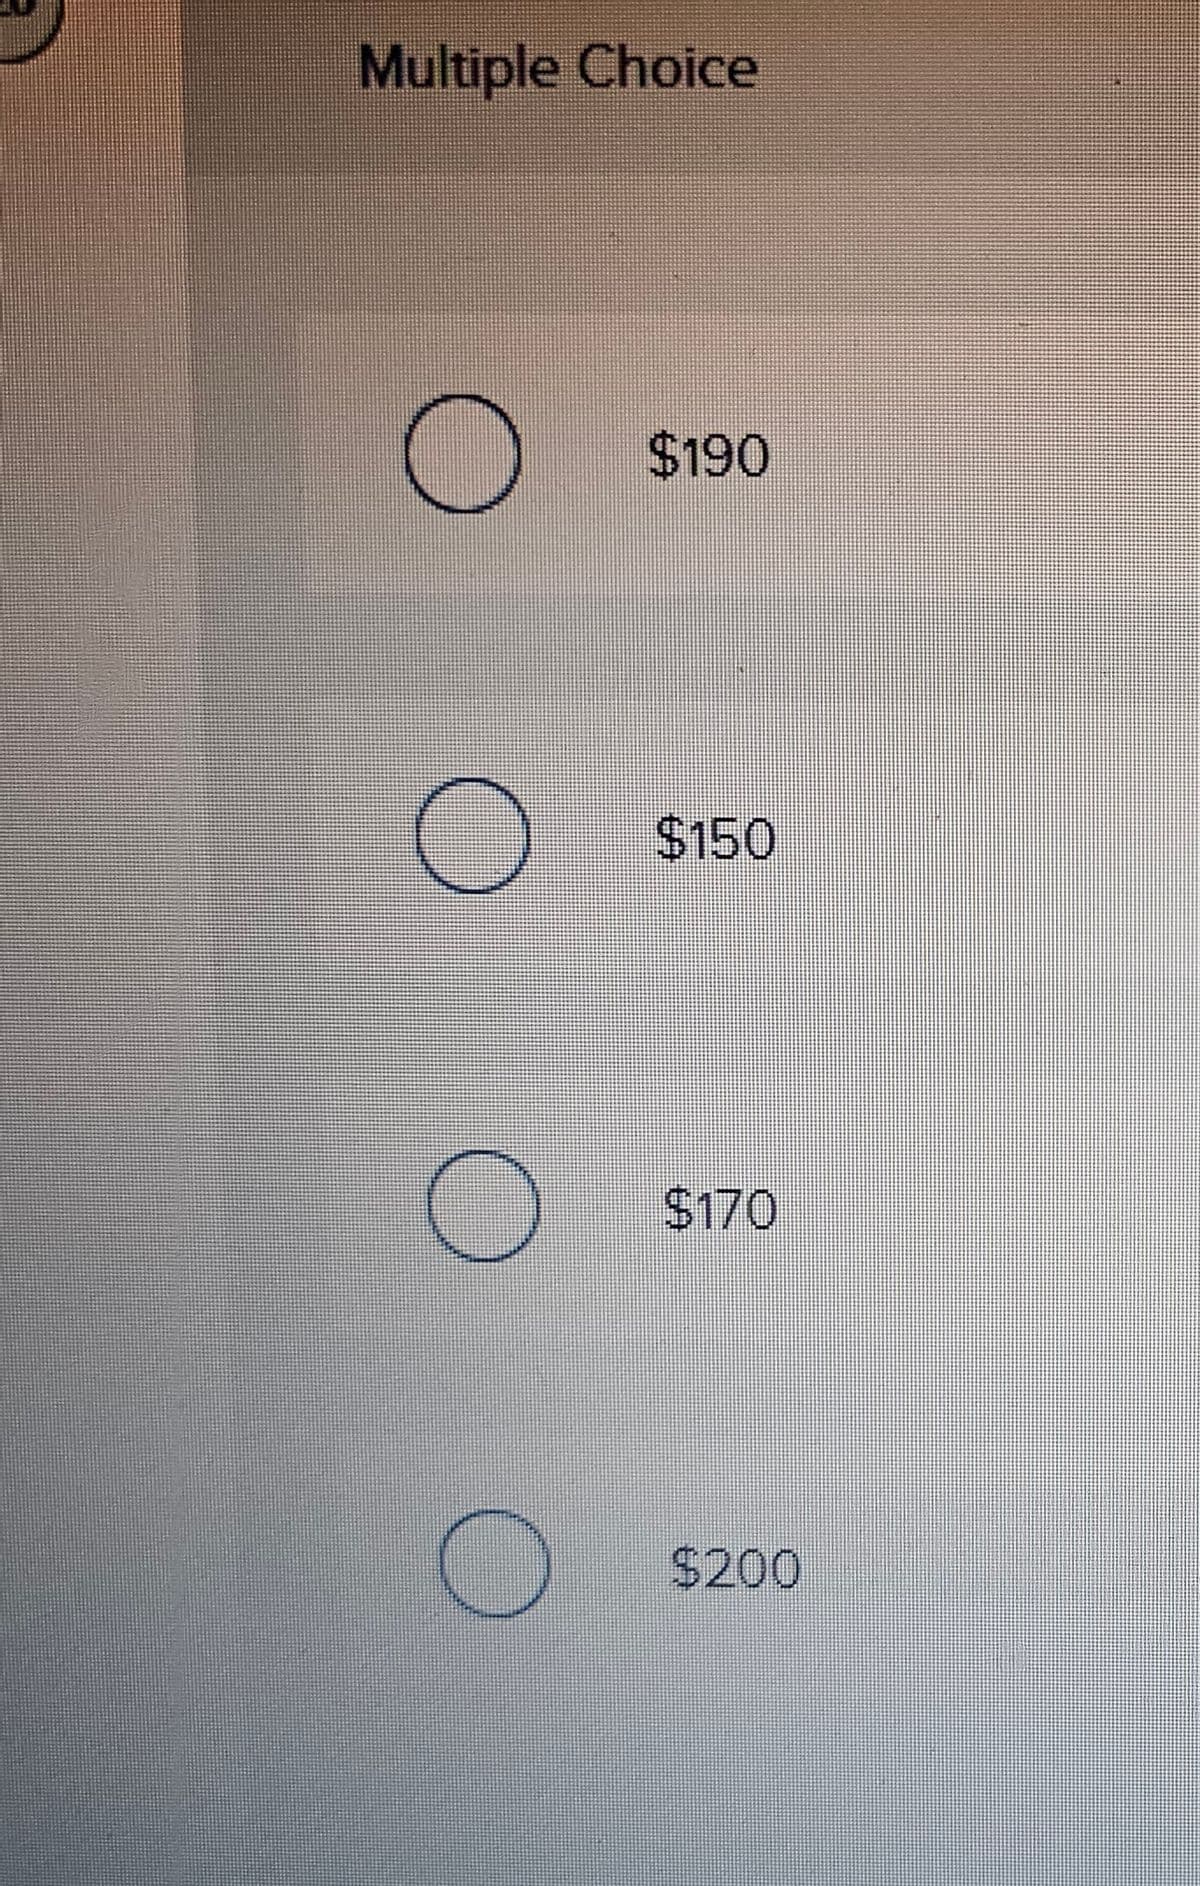 Multiple Choice
$190
$150
$170
$200